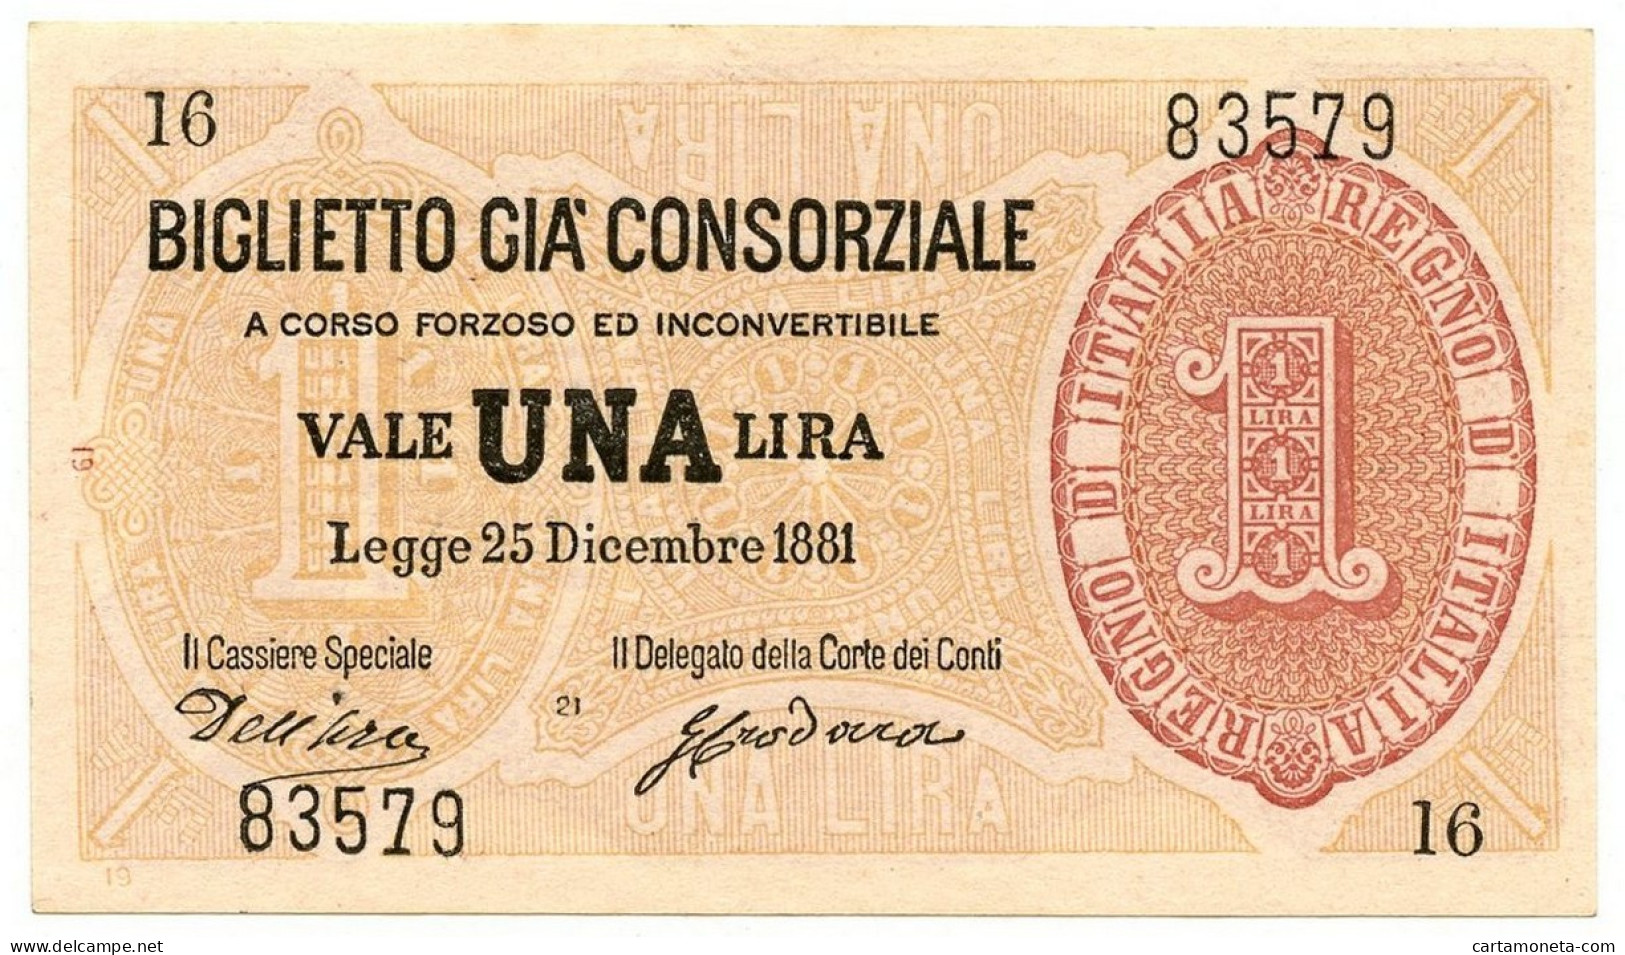 1 LIRA BIGLIETTO GIÀ CONSORZIALE REGNO D'ITALIA 25/12/1881 QFDS - Biglietti Gia Consorziale